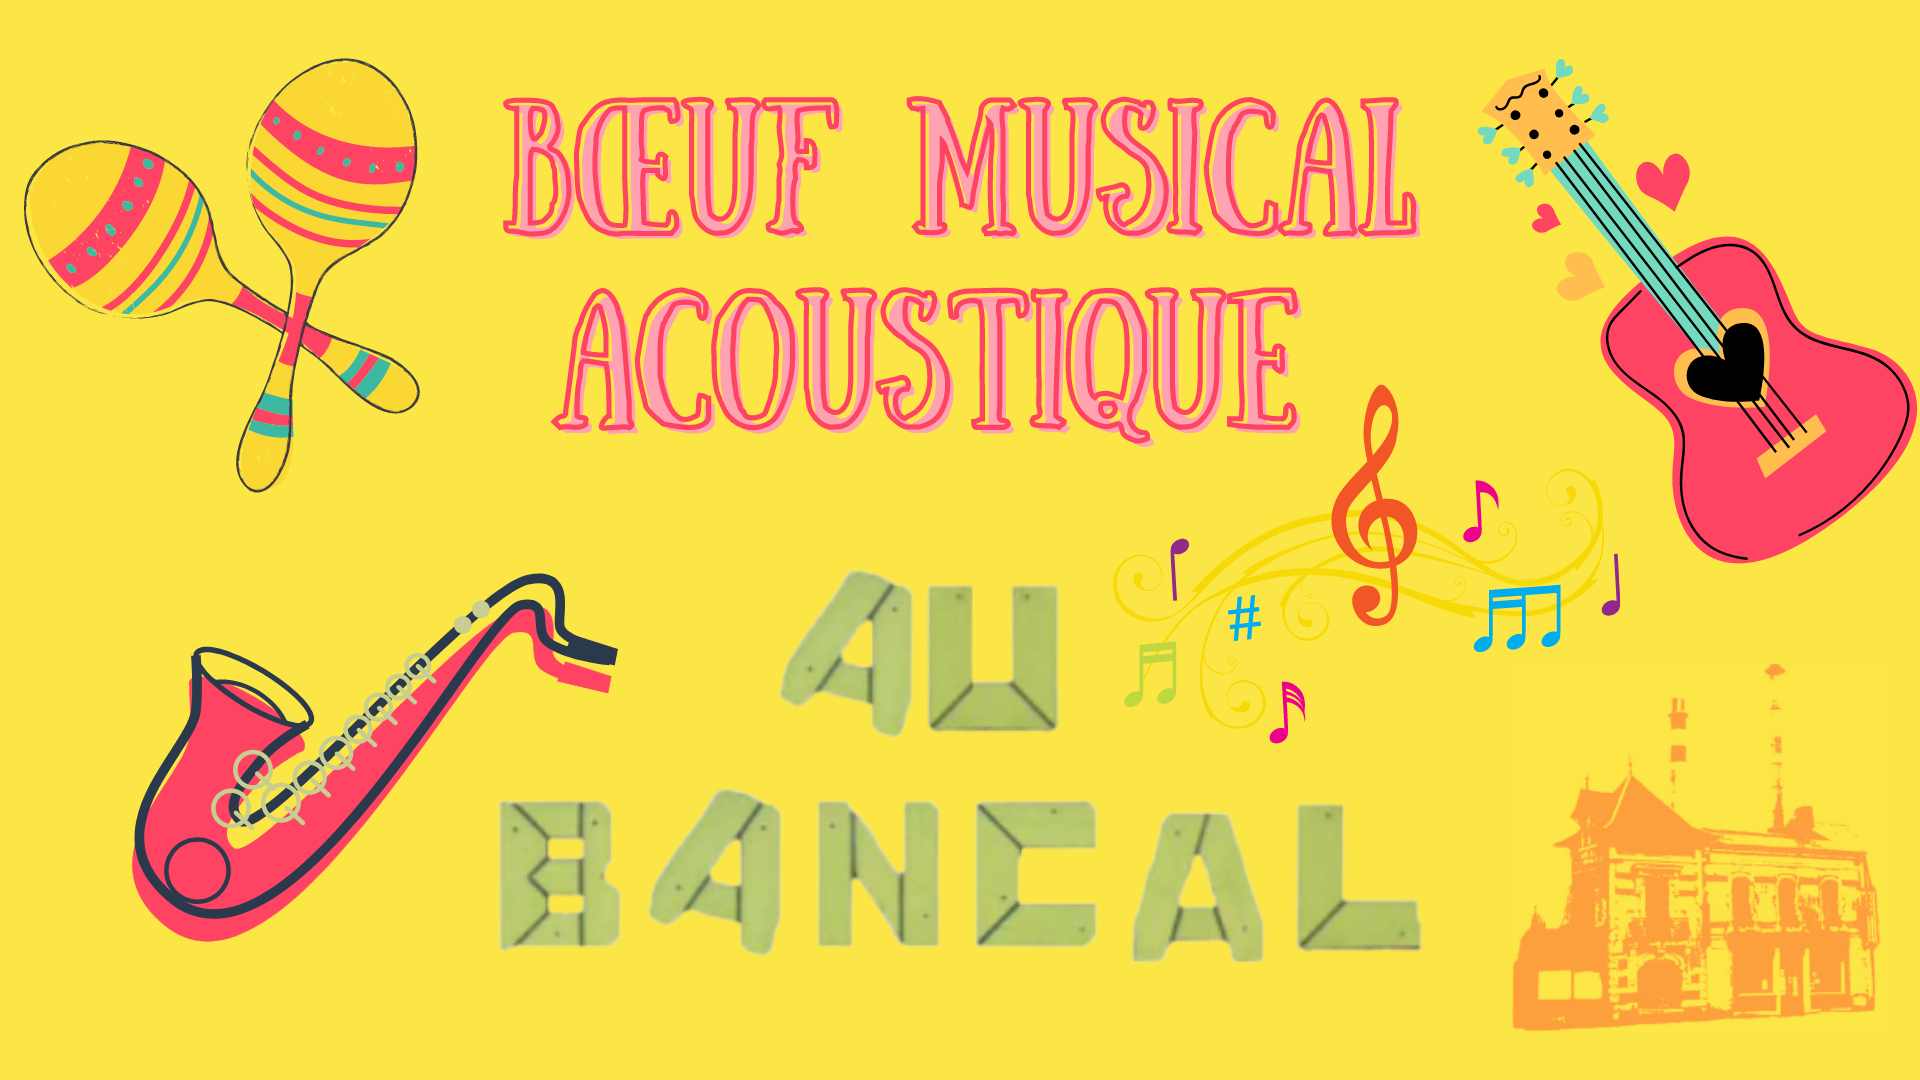 Boeuf_musical_acoustique